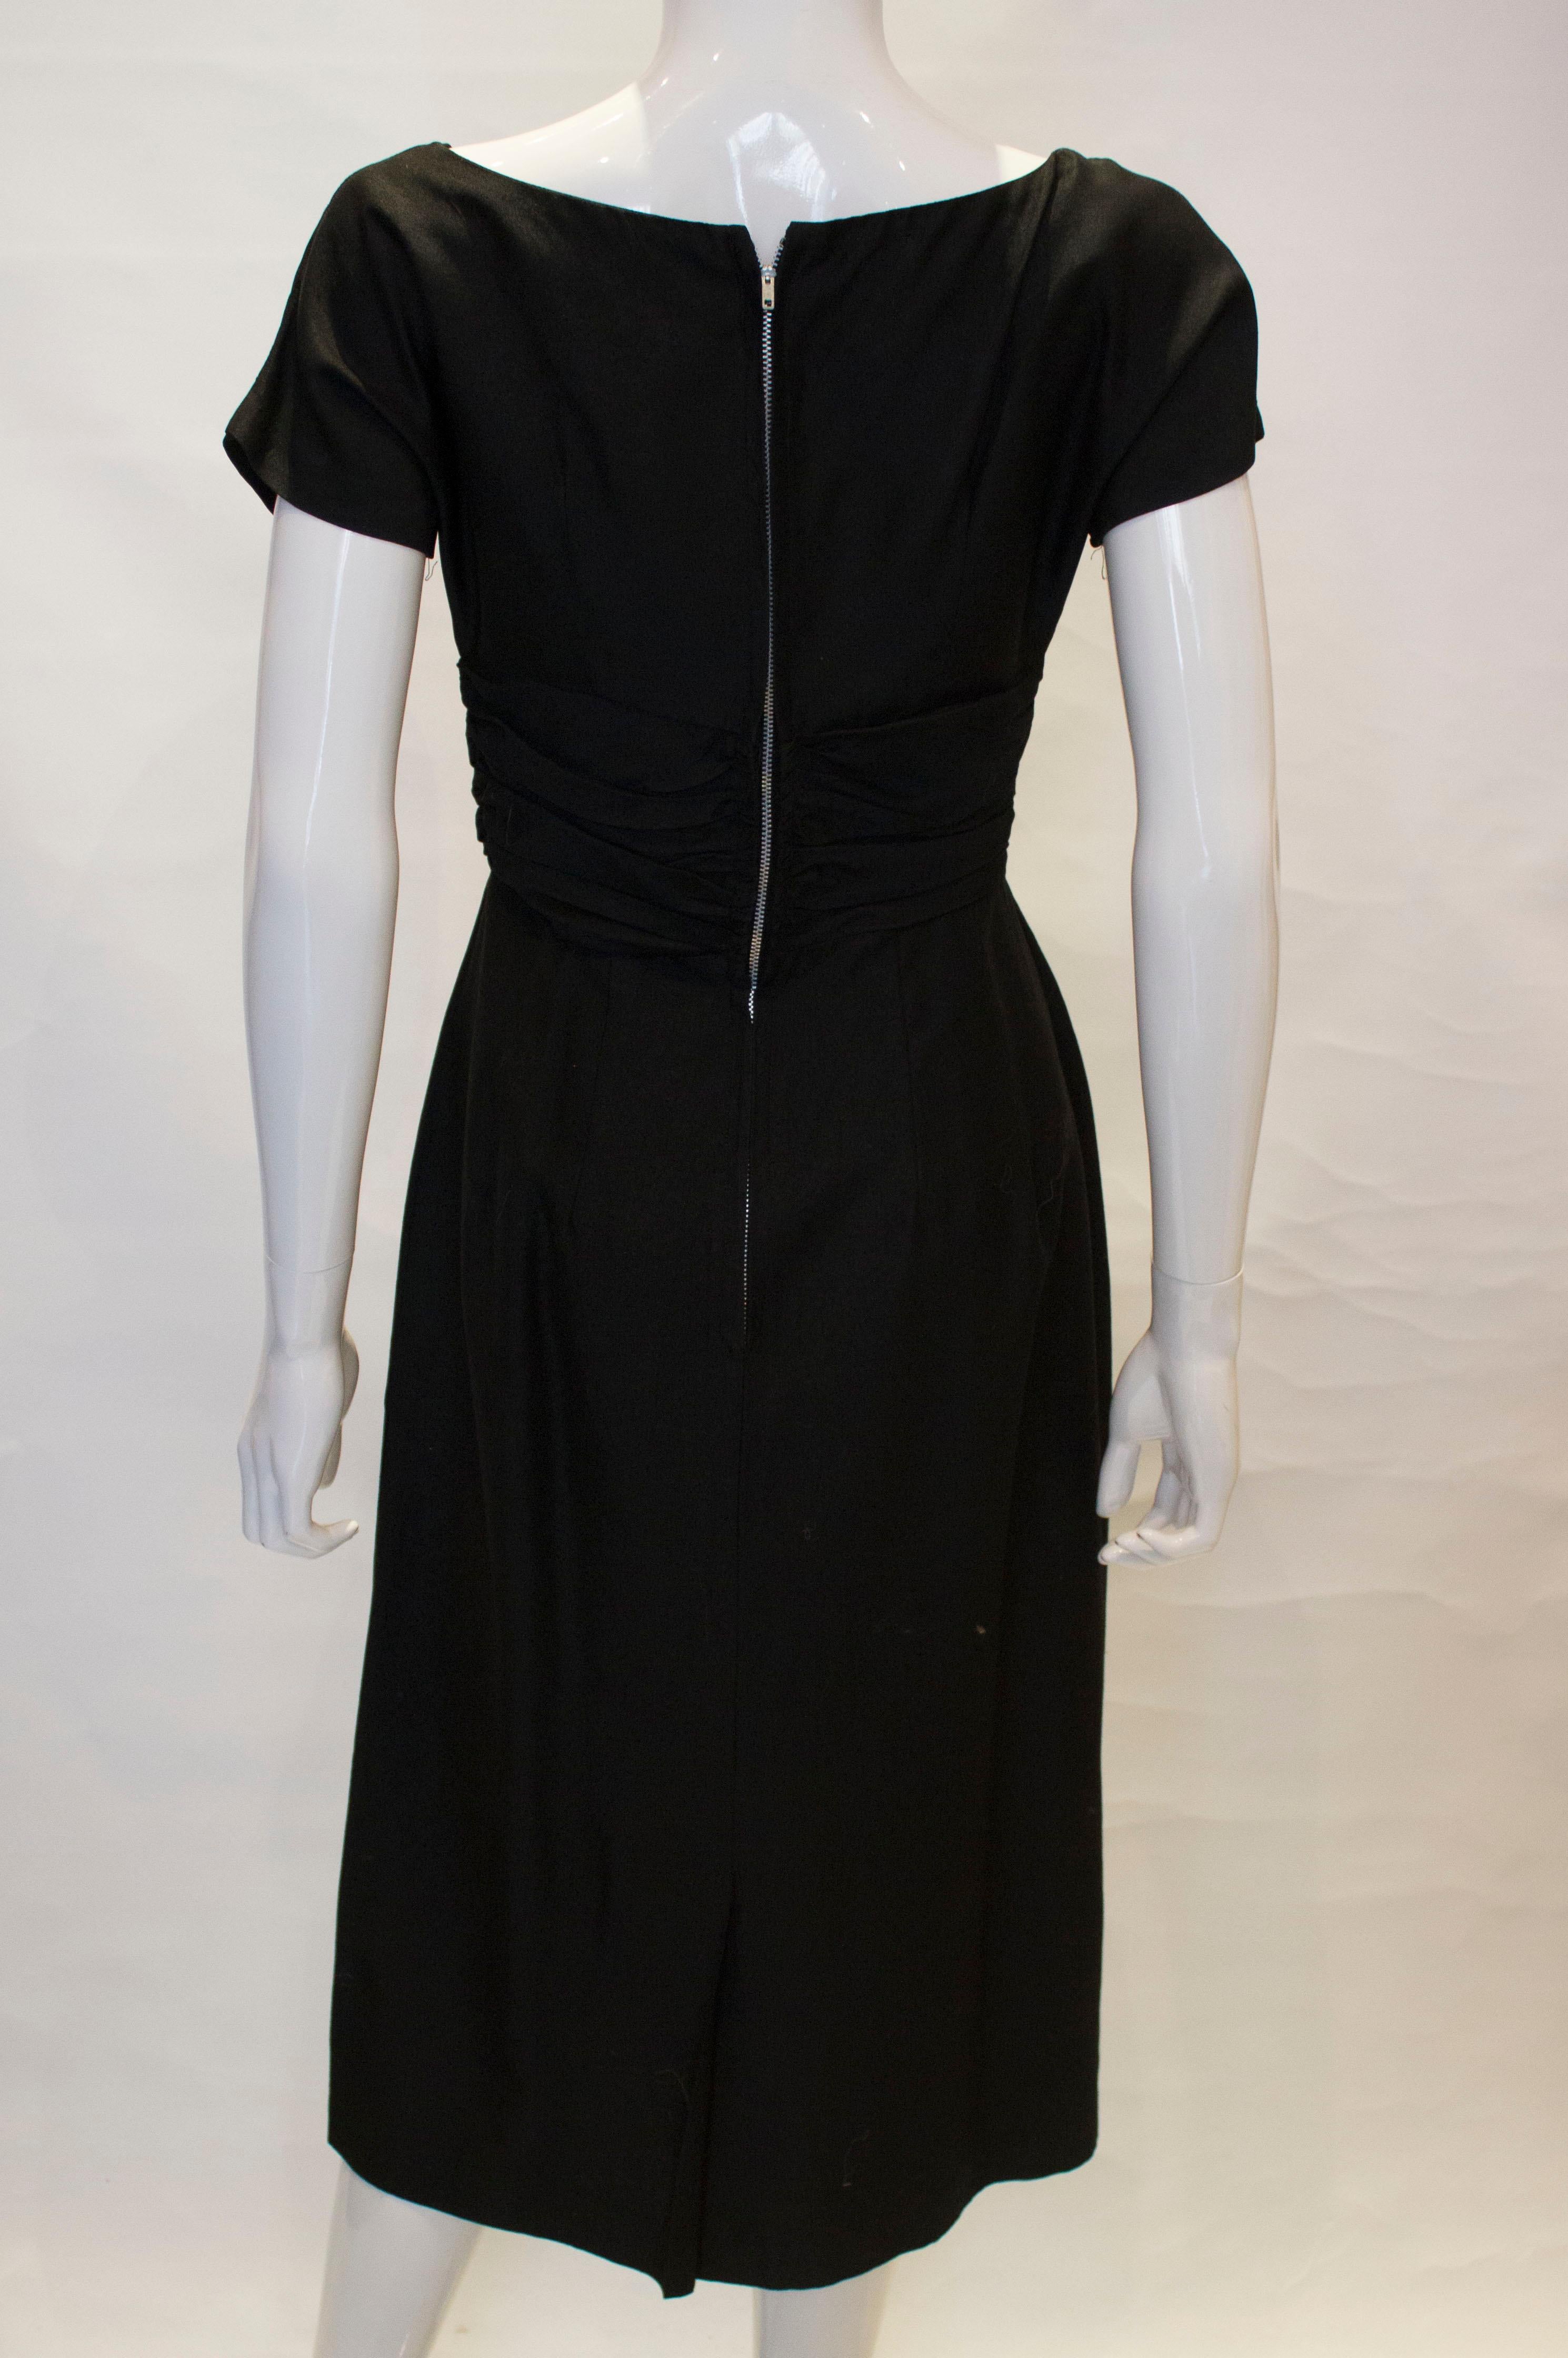 Vintage 1950s Black Cocktail Dress For Sale 4